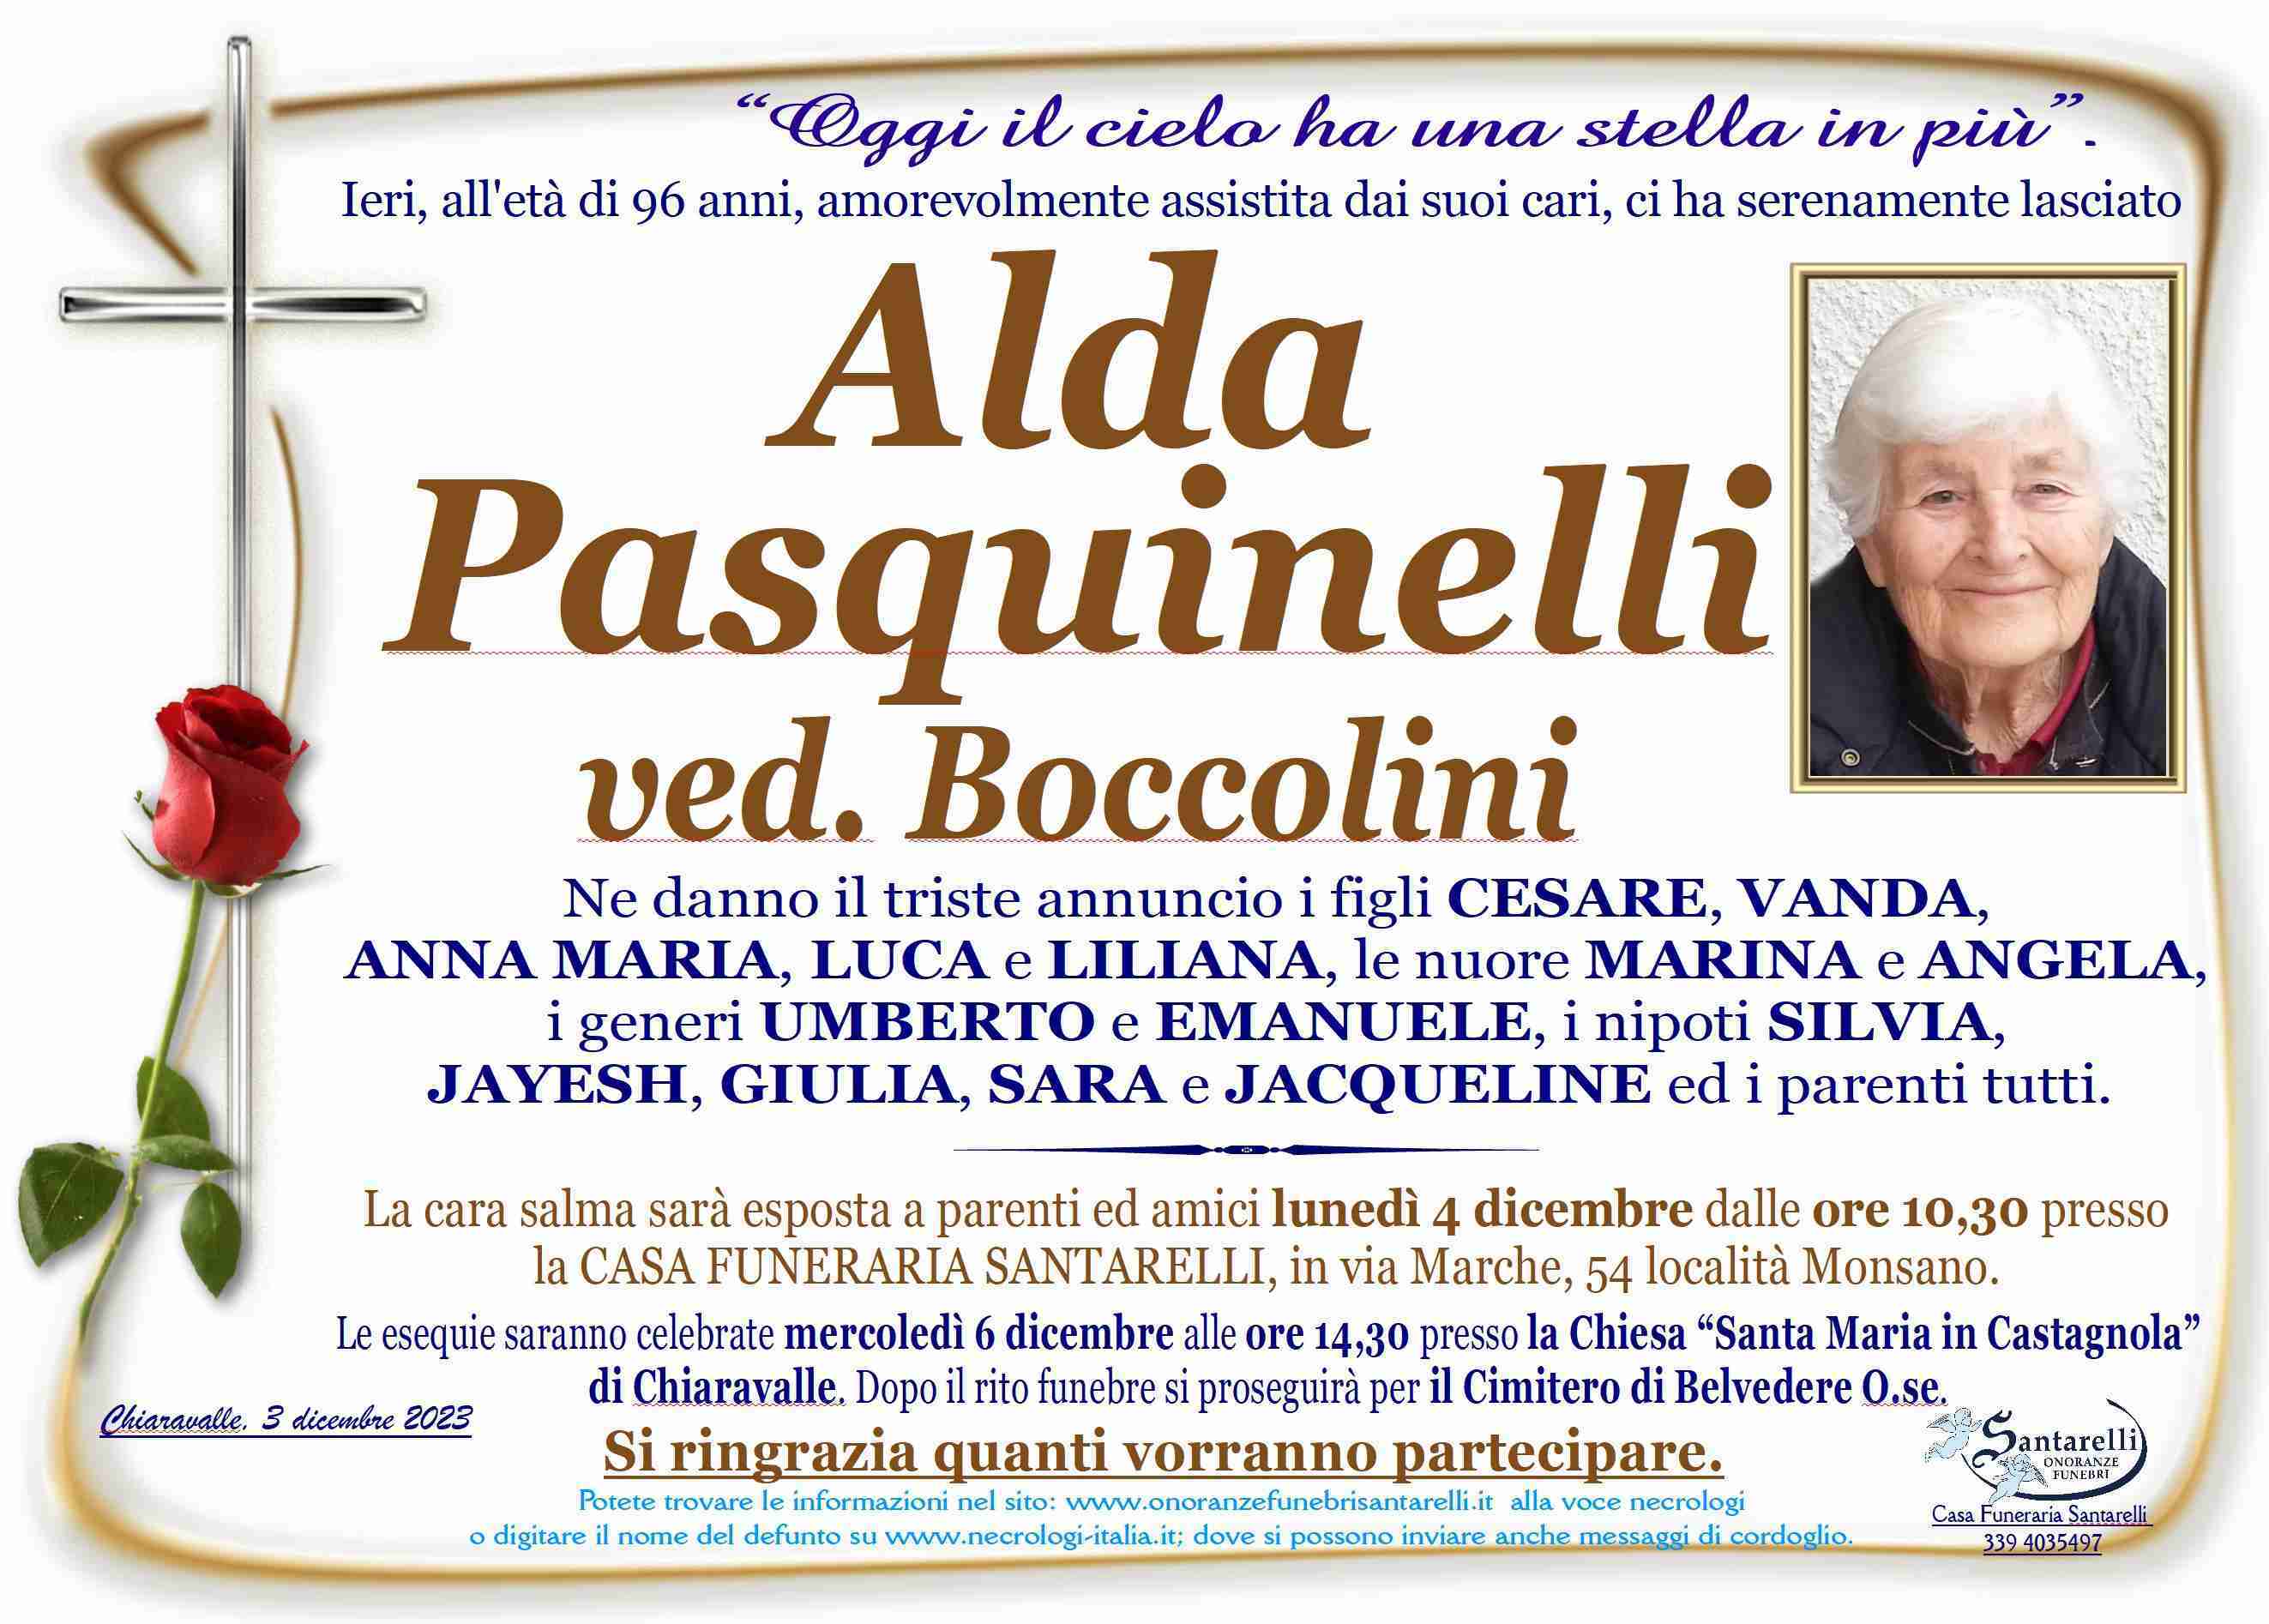 Alda Pasquinelli